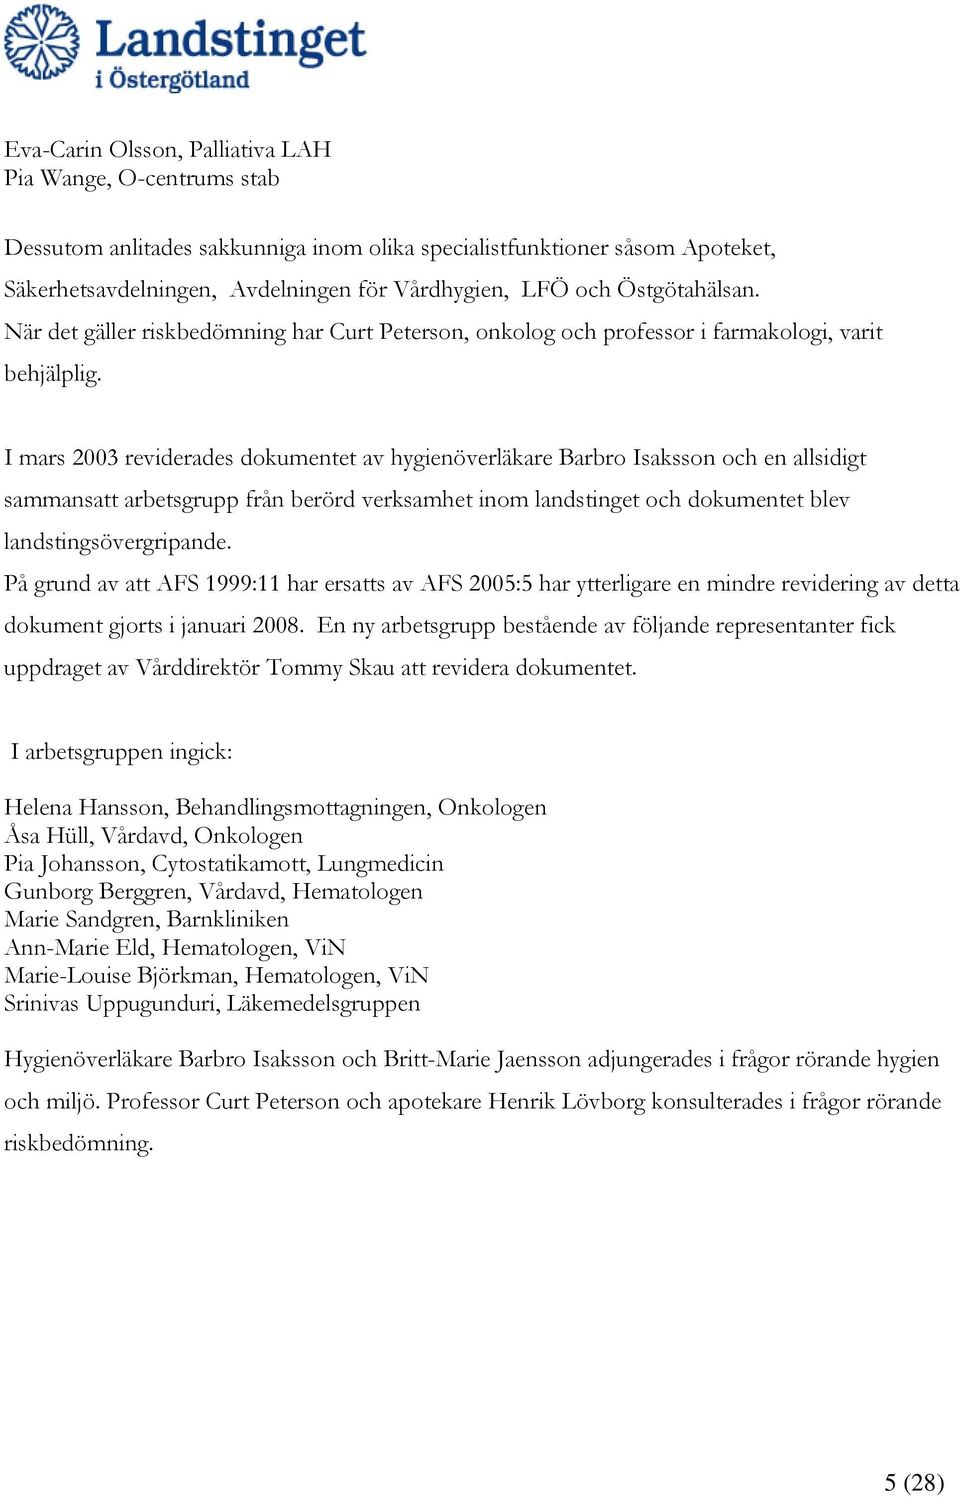 I mars 2003 reviderades dokumentet av hygienöverläkare Barbro Isaksson och en allsidigt sammansatt arbetsgrupp från berörd verksamhet inom landstinget och dokumentet blev landstingsövergripande.